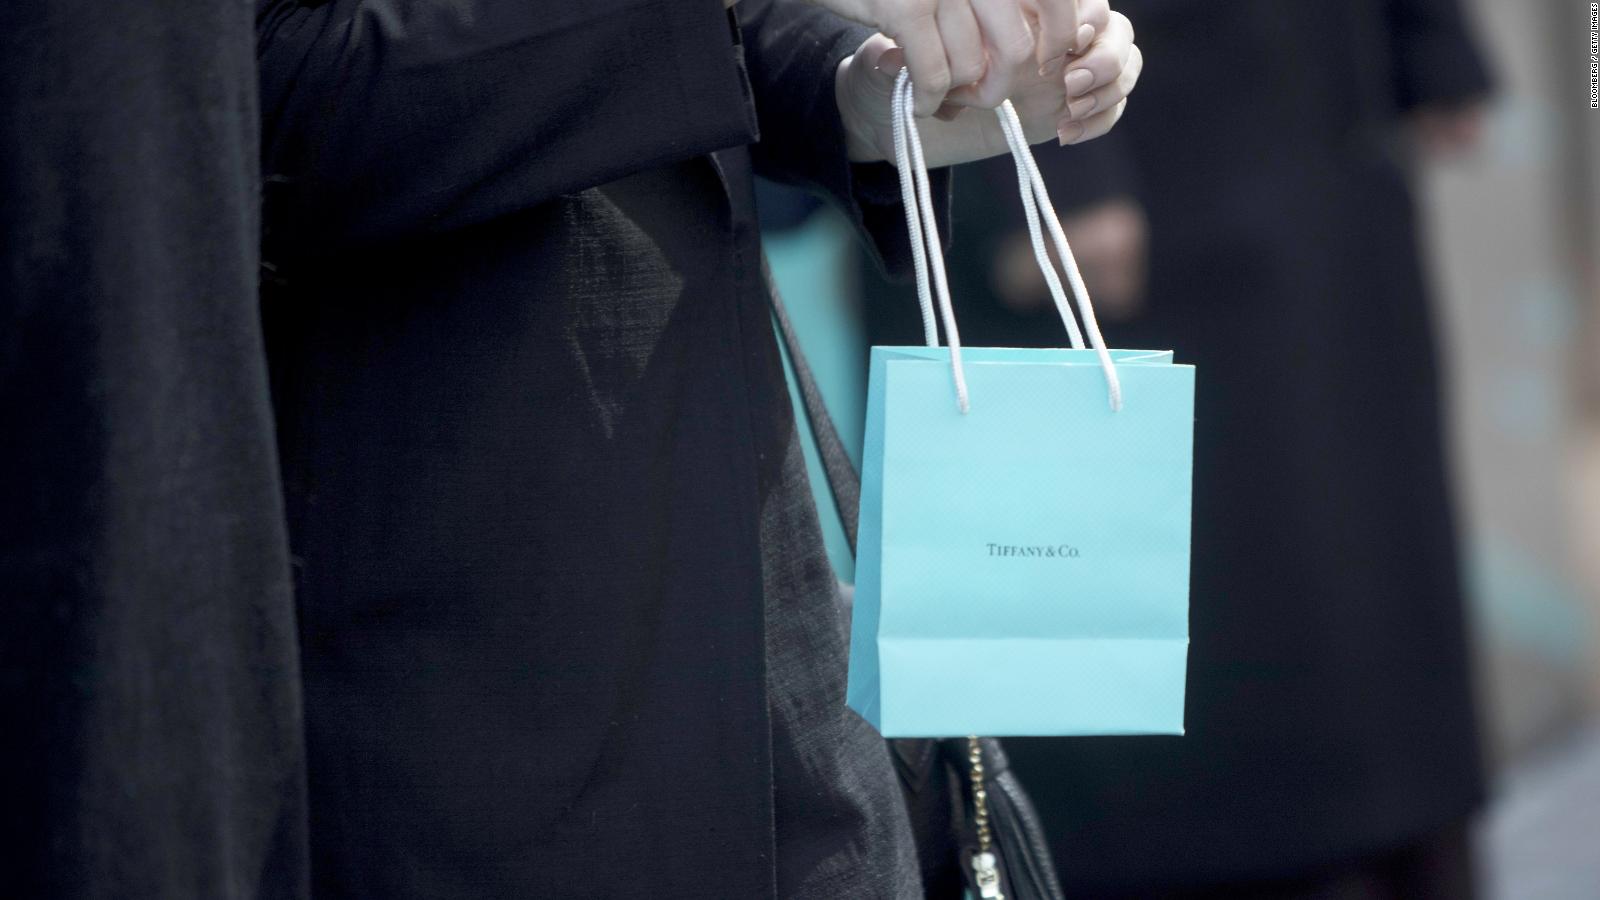 Louis Vuitton quiere comprar Tiffany & Co - CNN Video